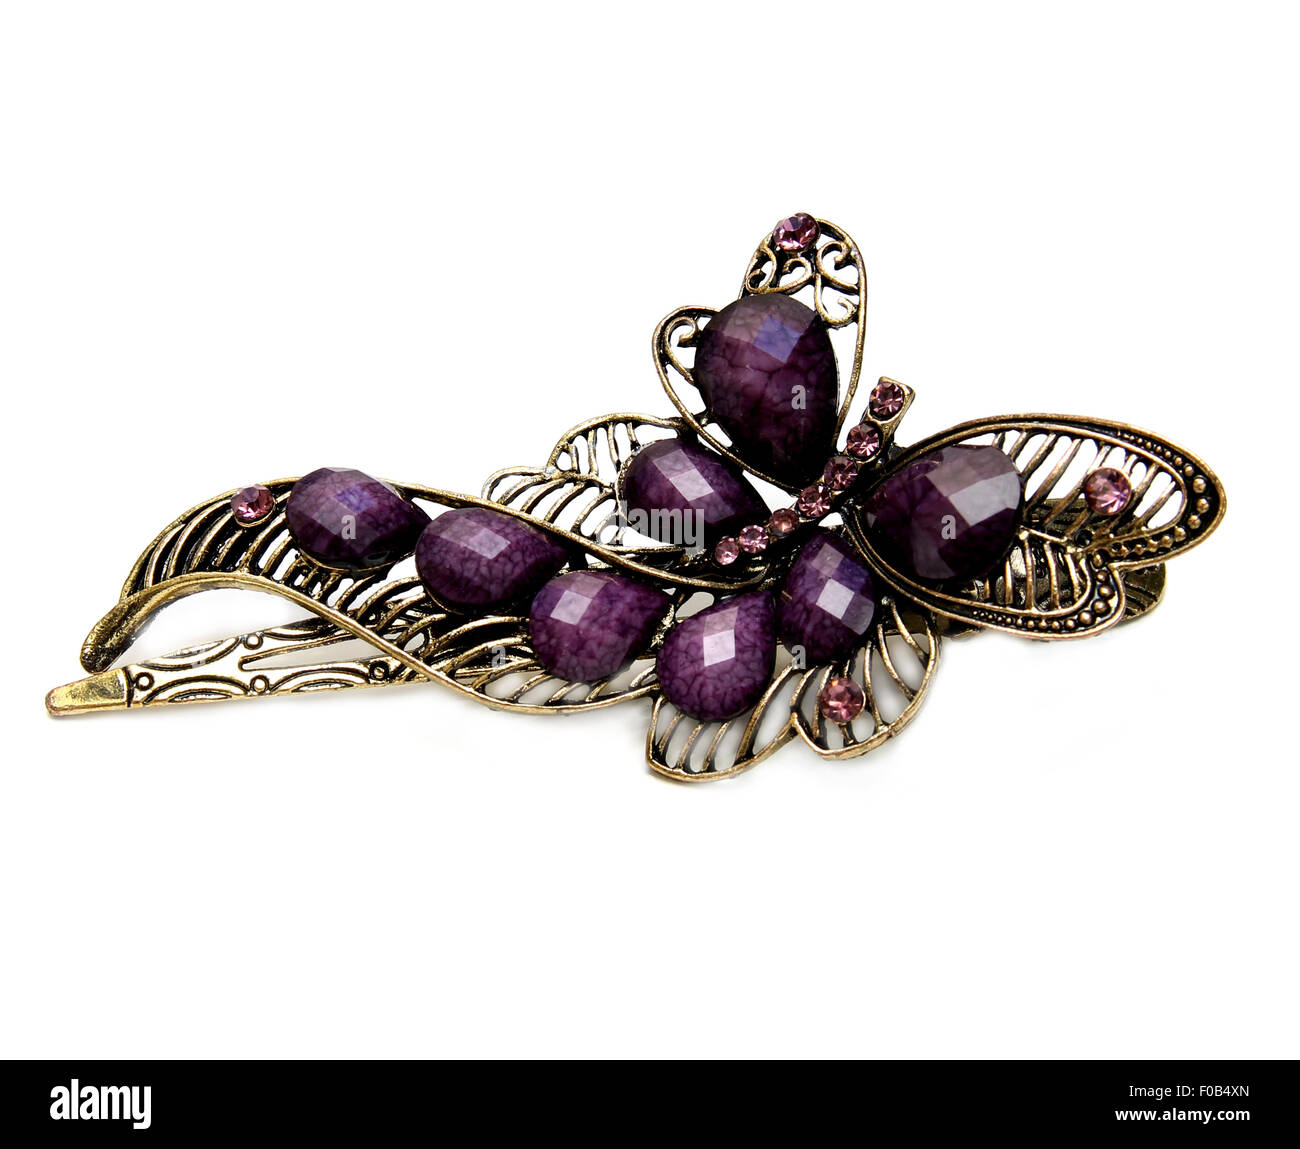 Metal magnifique pince à cheveux violet avec de grosses pierres, en fond blanc Banque D'Images